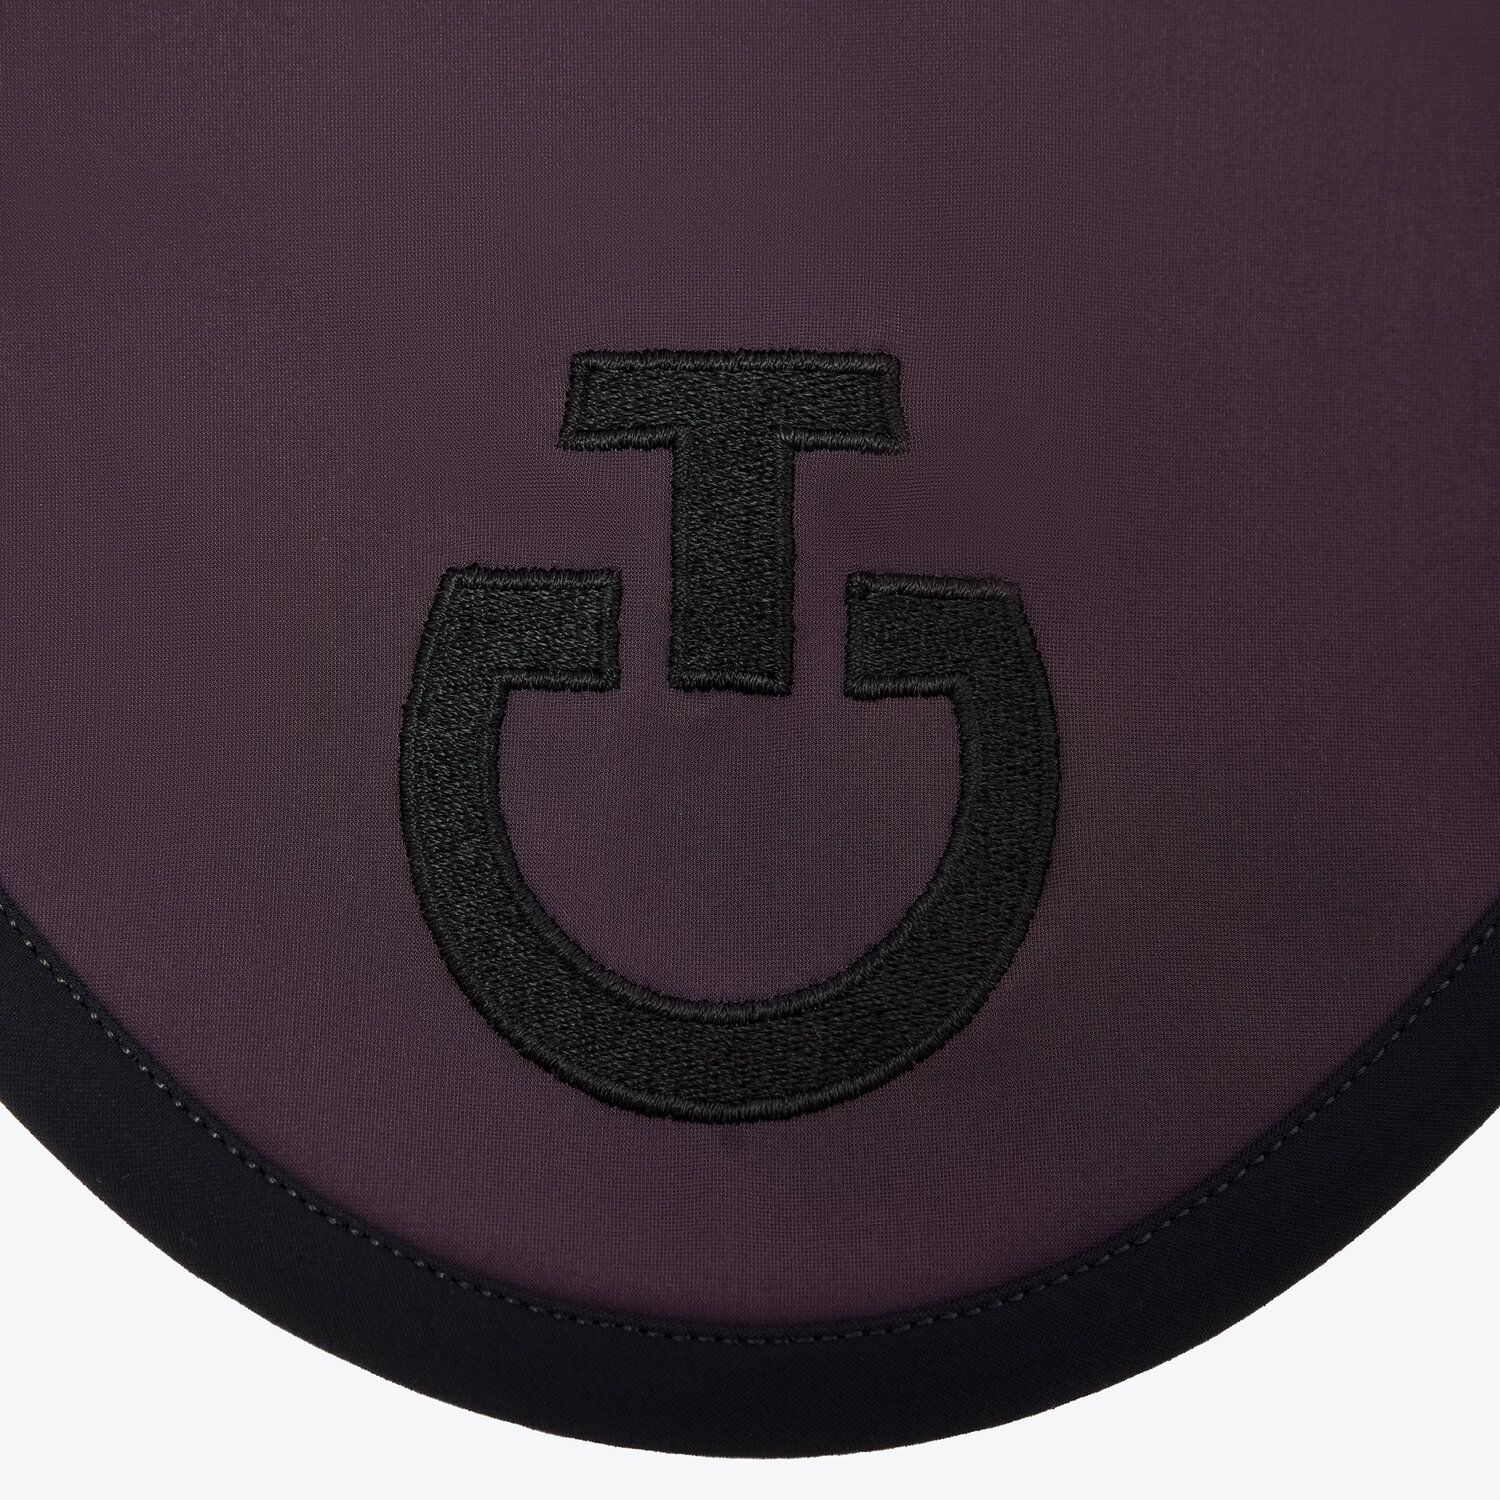 Cavalleria Toscana Cuffia per cavallo insonorizzata con logo realizzata in jersey leggero. 3A99-2